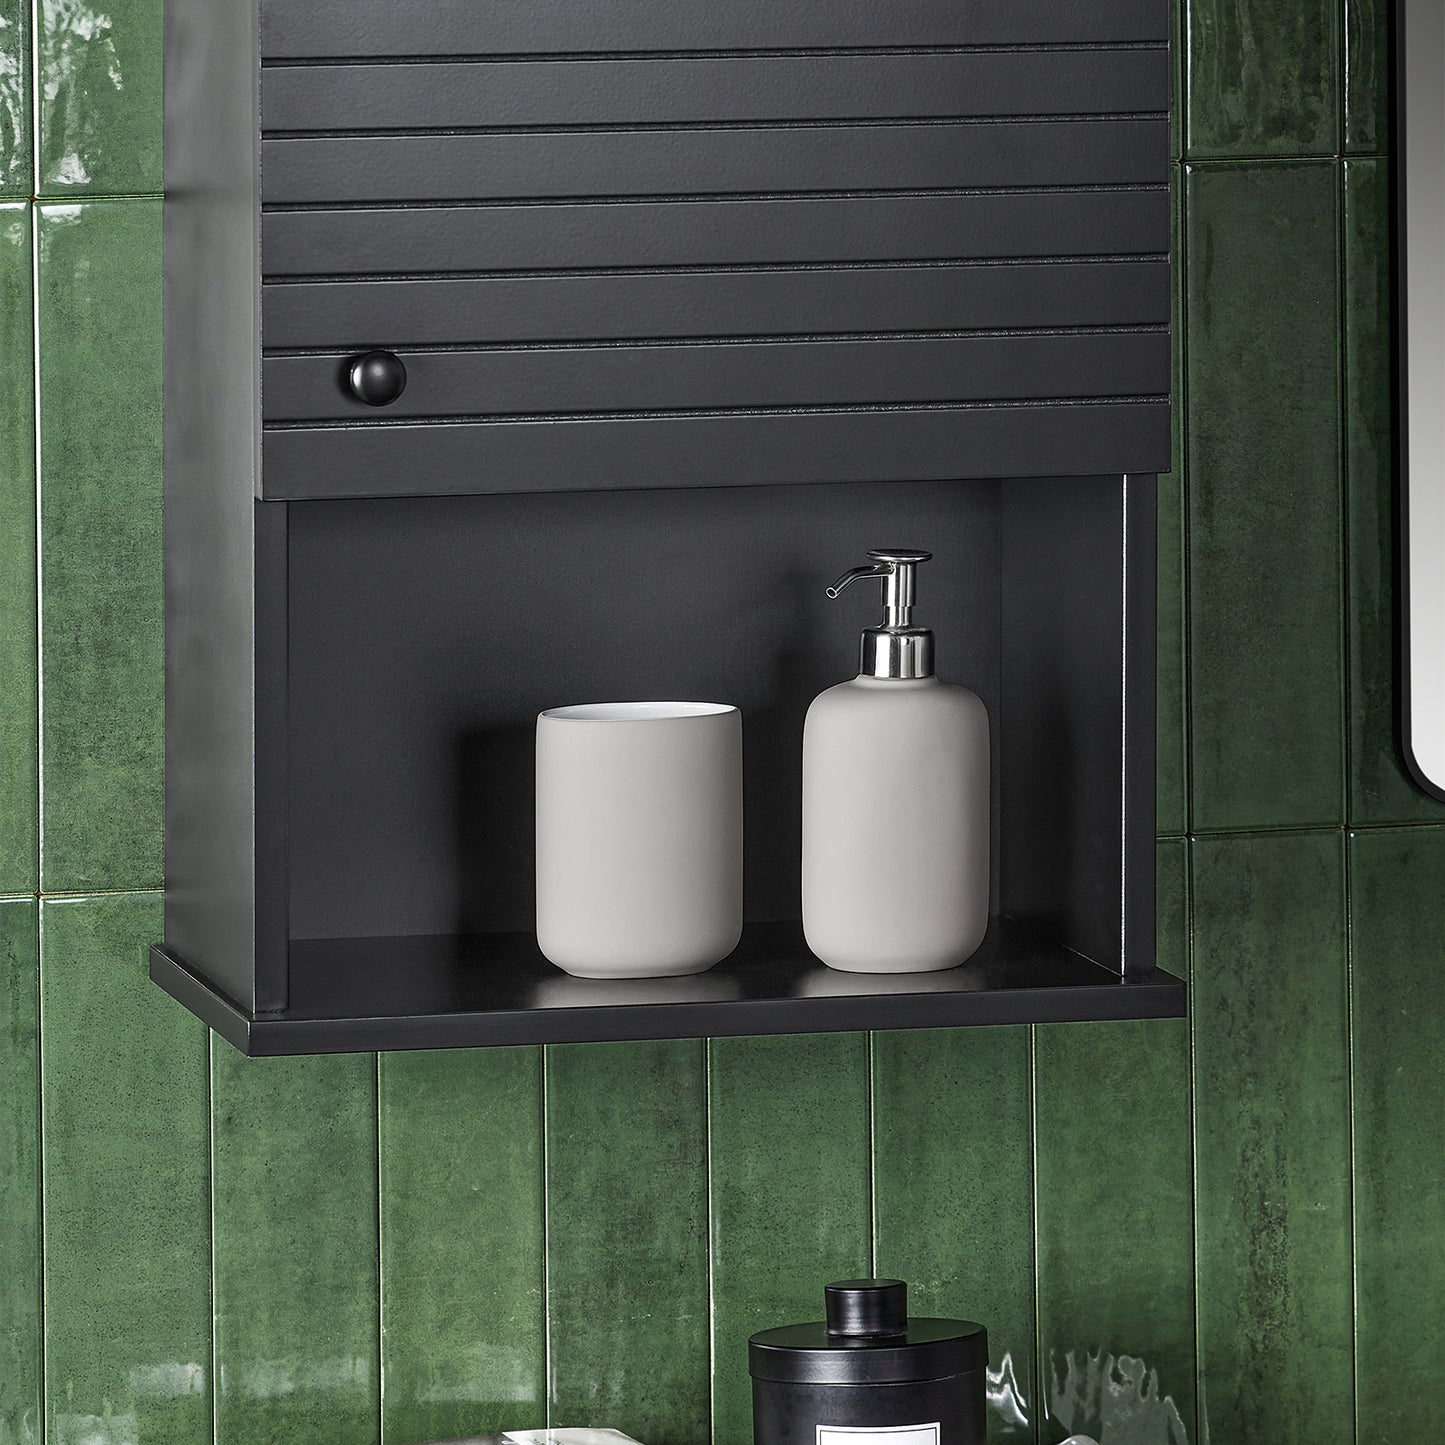 SoBuy Wall Mounted Single Door Bathroom Storage Cabinet Medicine Cabinet Black